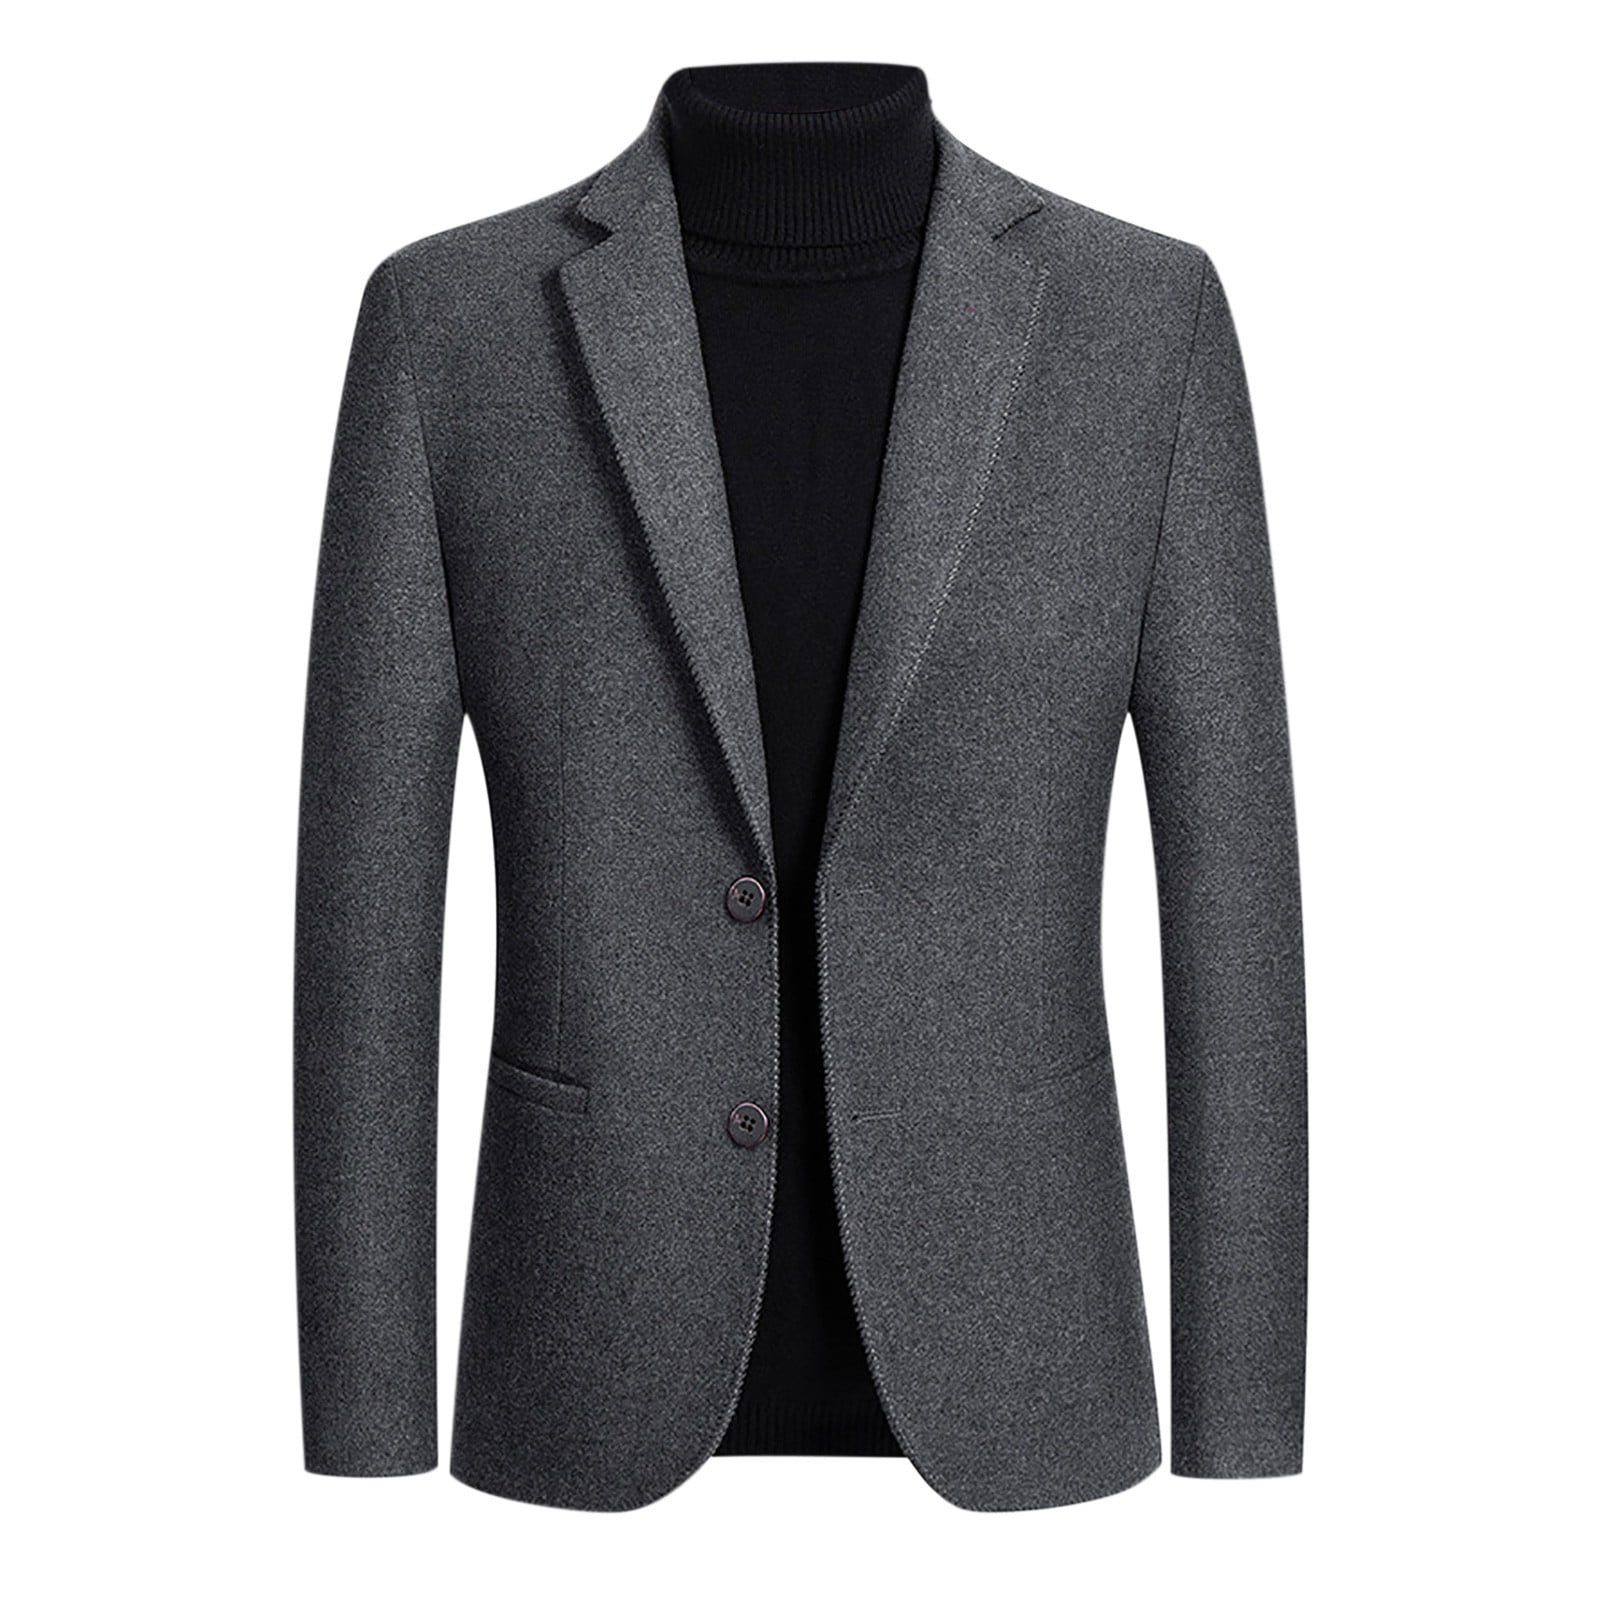 QENGING Men's Suit Jacket Single Breasted Plian Suit Business Slim Fit ...